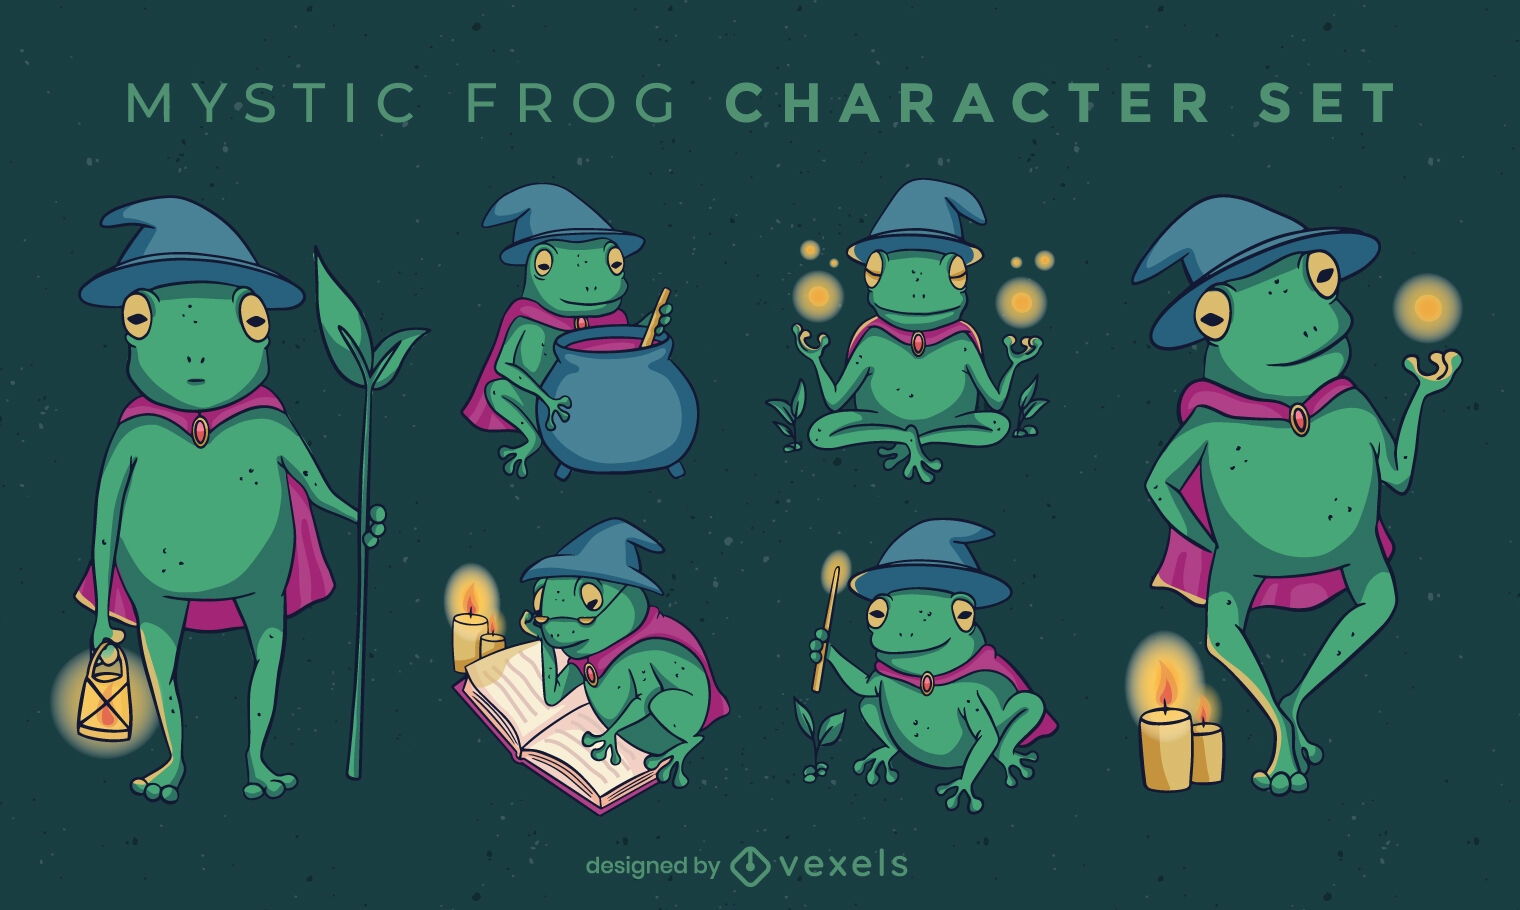 Mystic frog character set